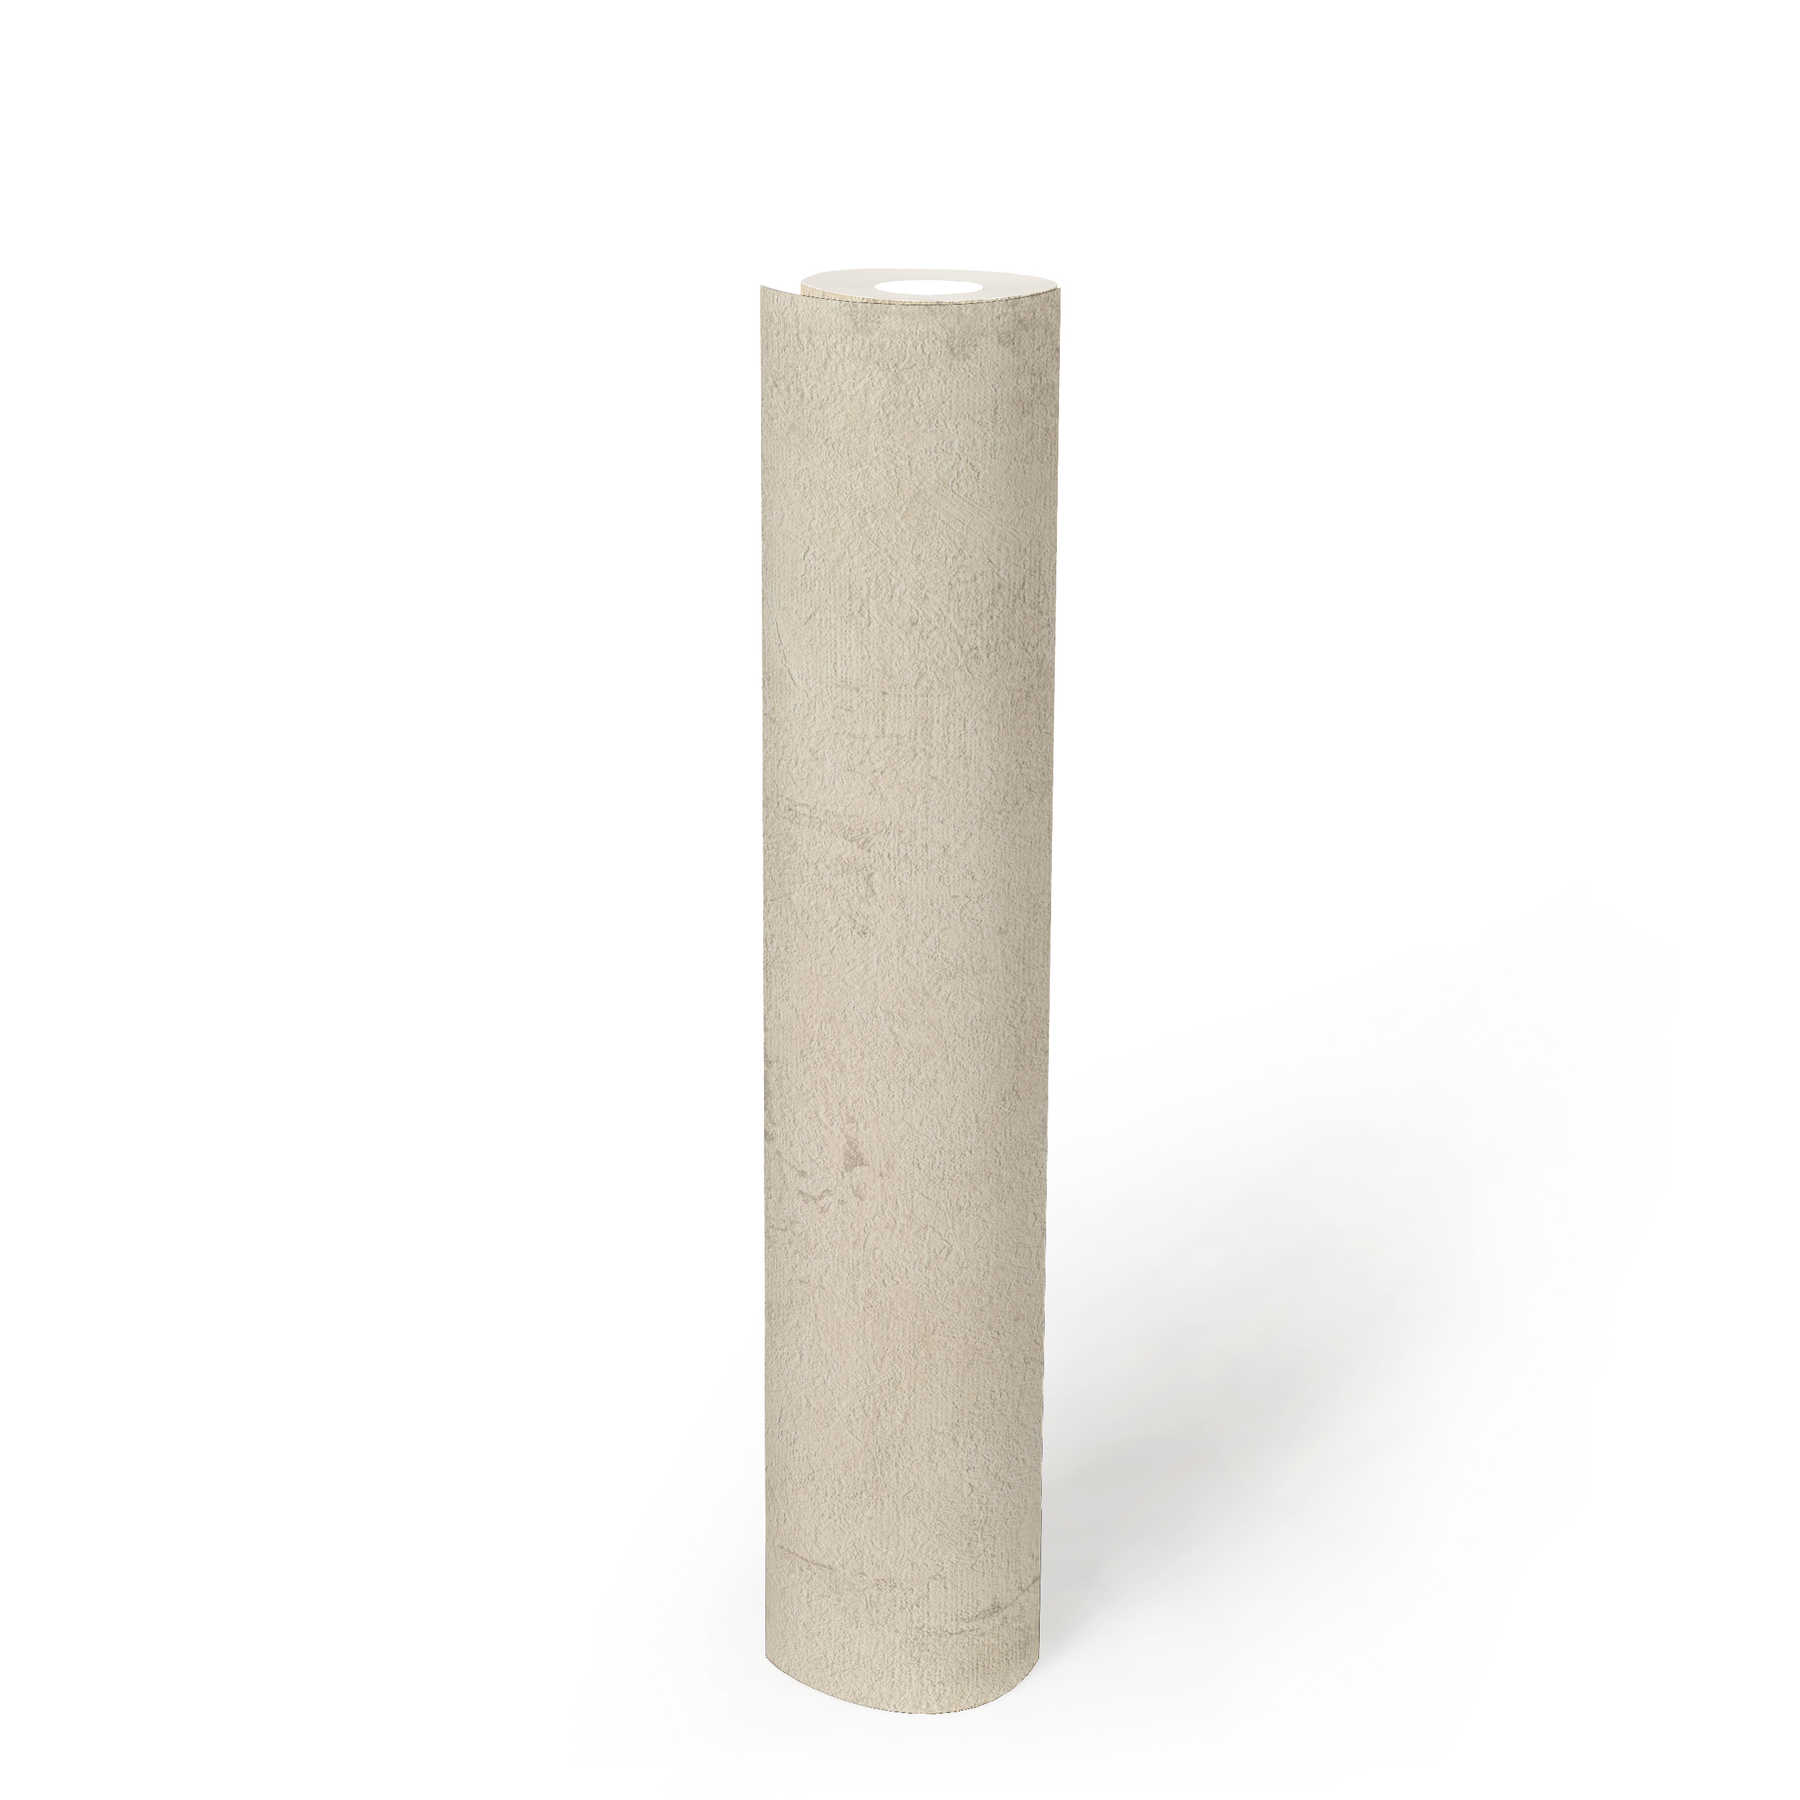             Papier peint structuré imitation crépi avec hachures de couleur - crème, gris
        